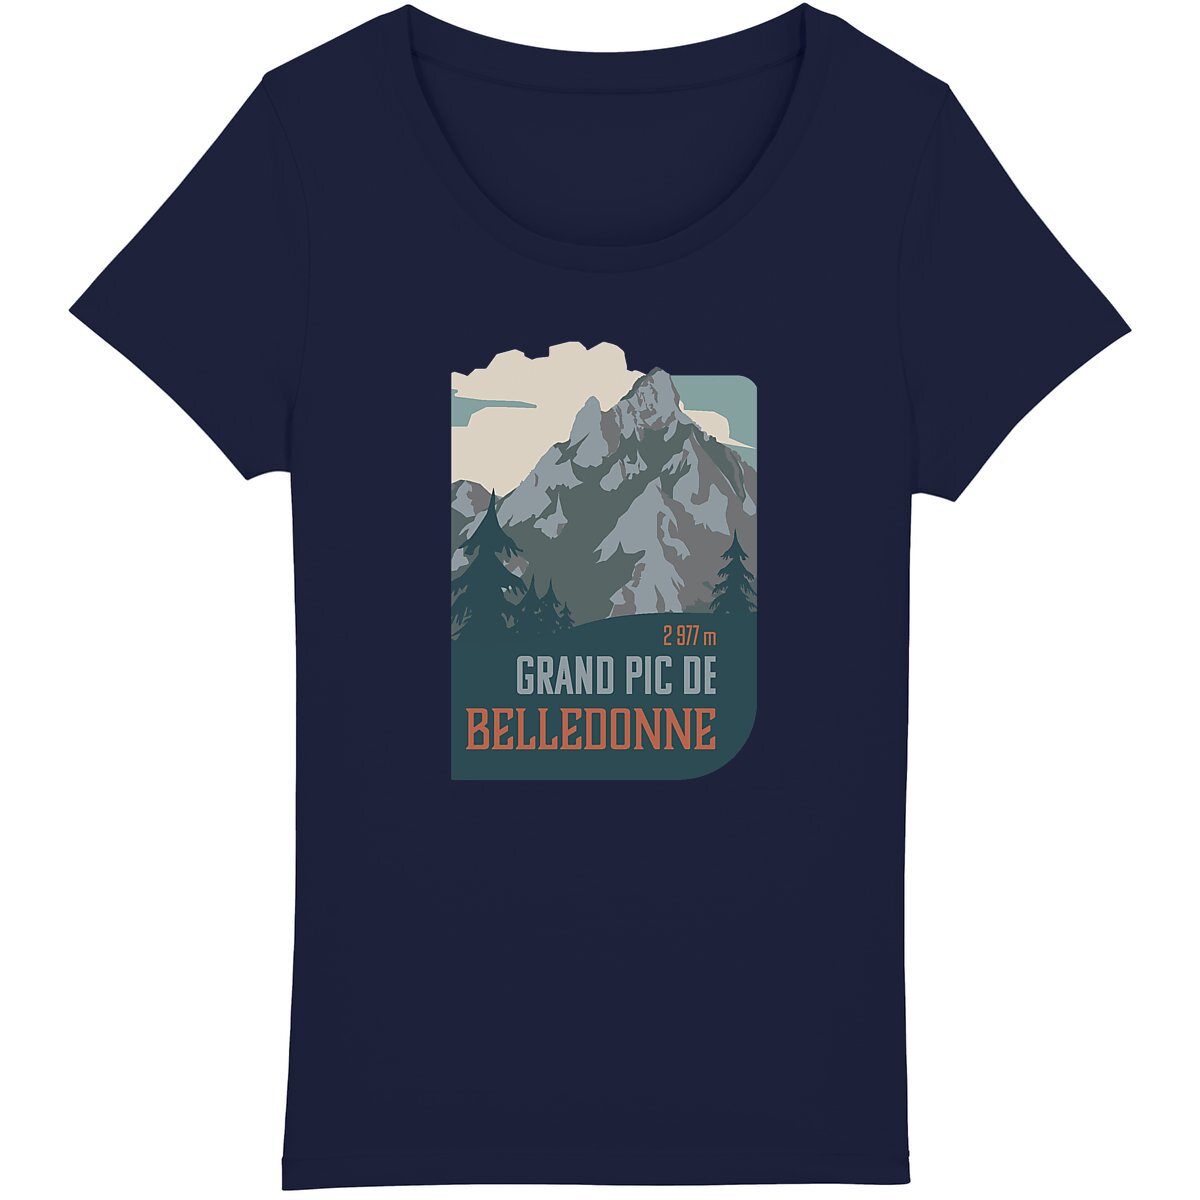 Style montagnard et engagement écologique sur t-shirt confortable